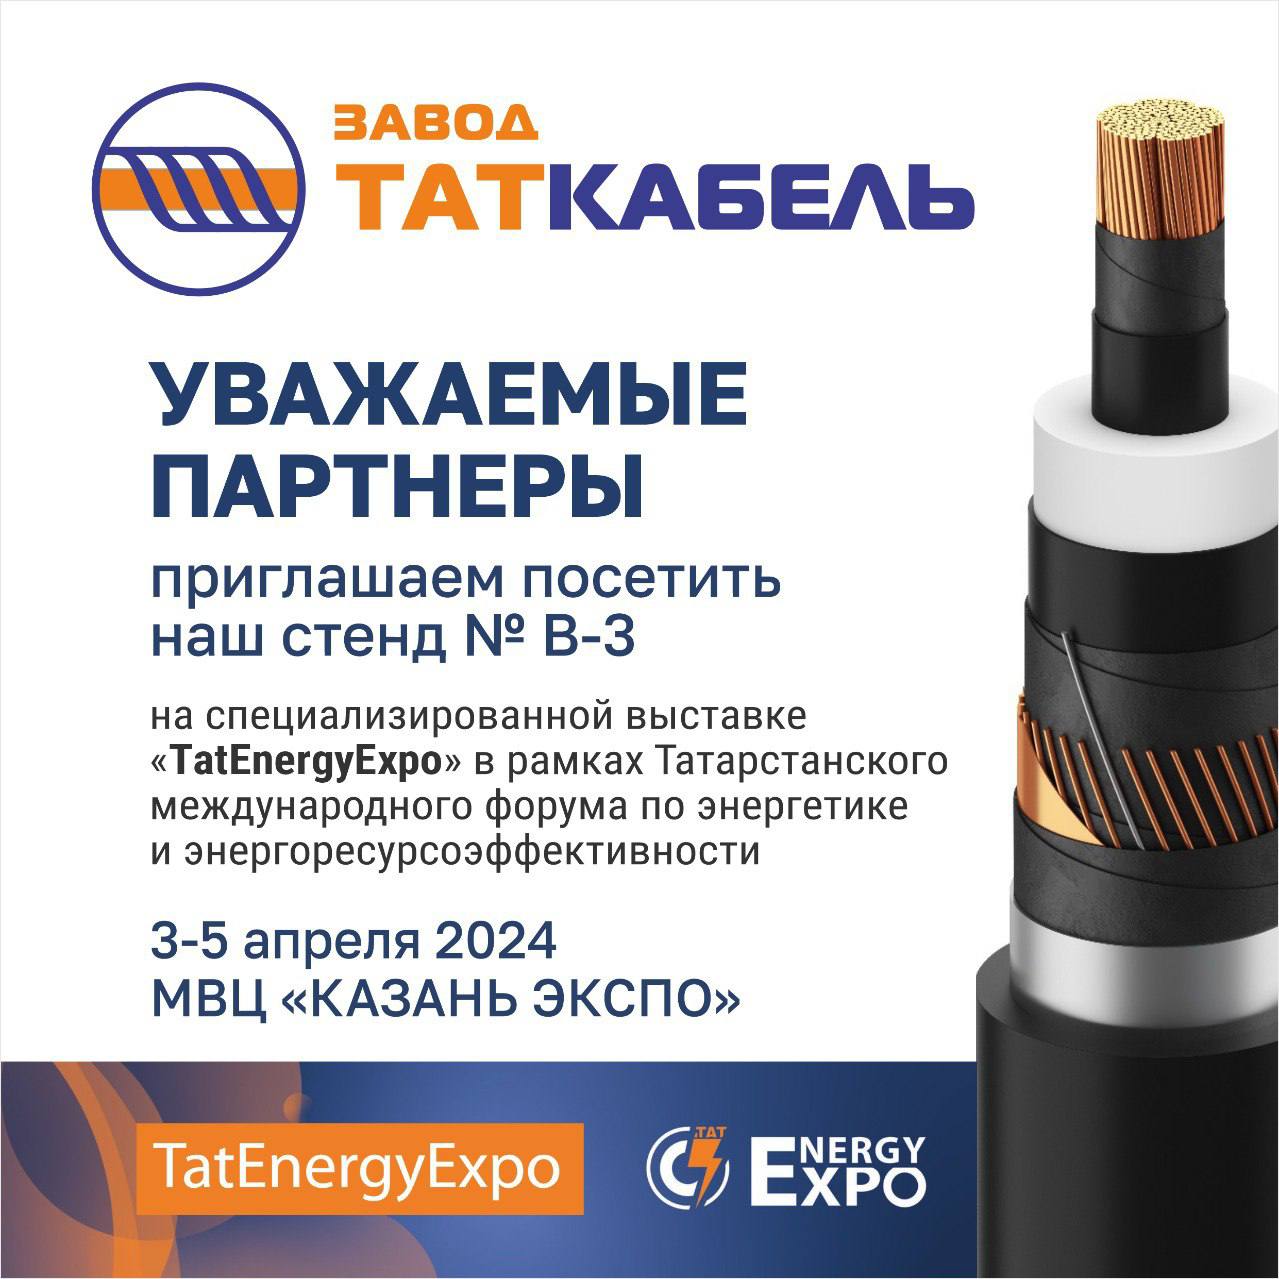 ООО «Завод ТАТКАБЕЛЬ» примет участие в выставке TatEnergyExpo-2024